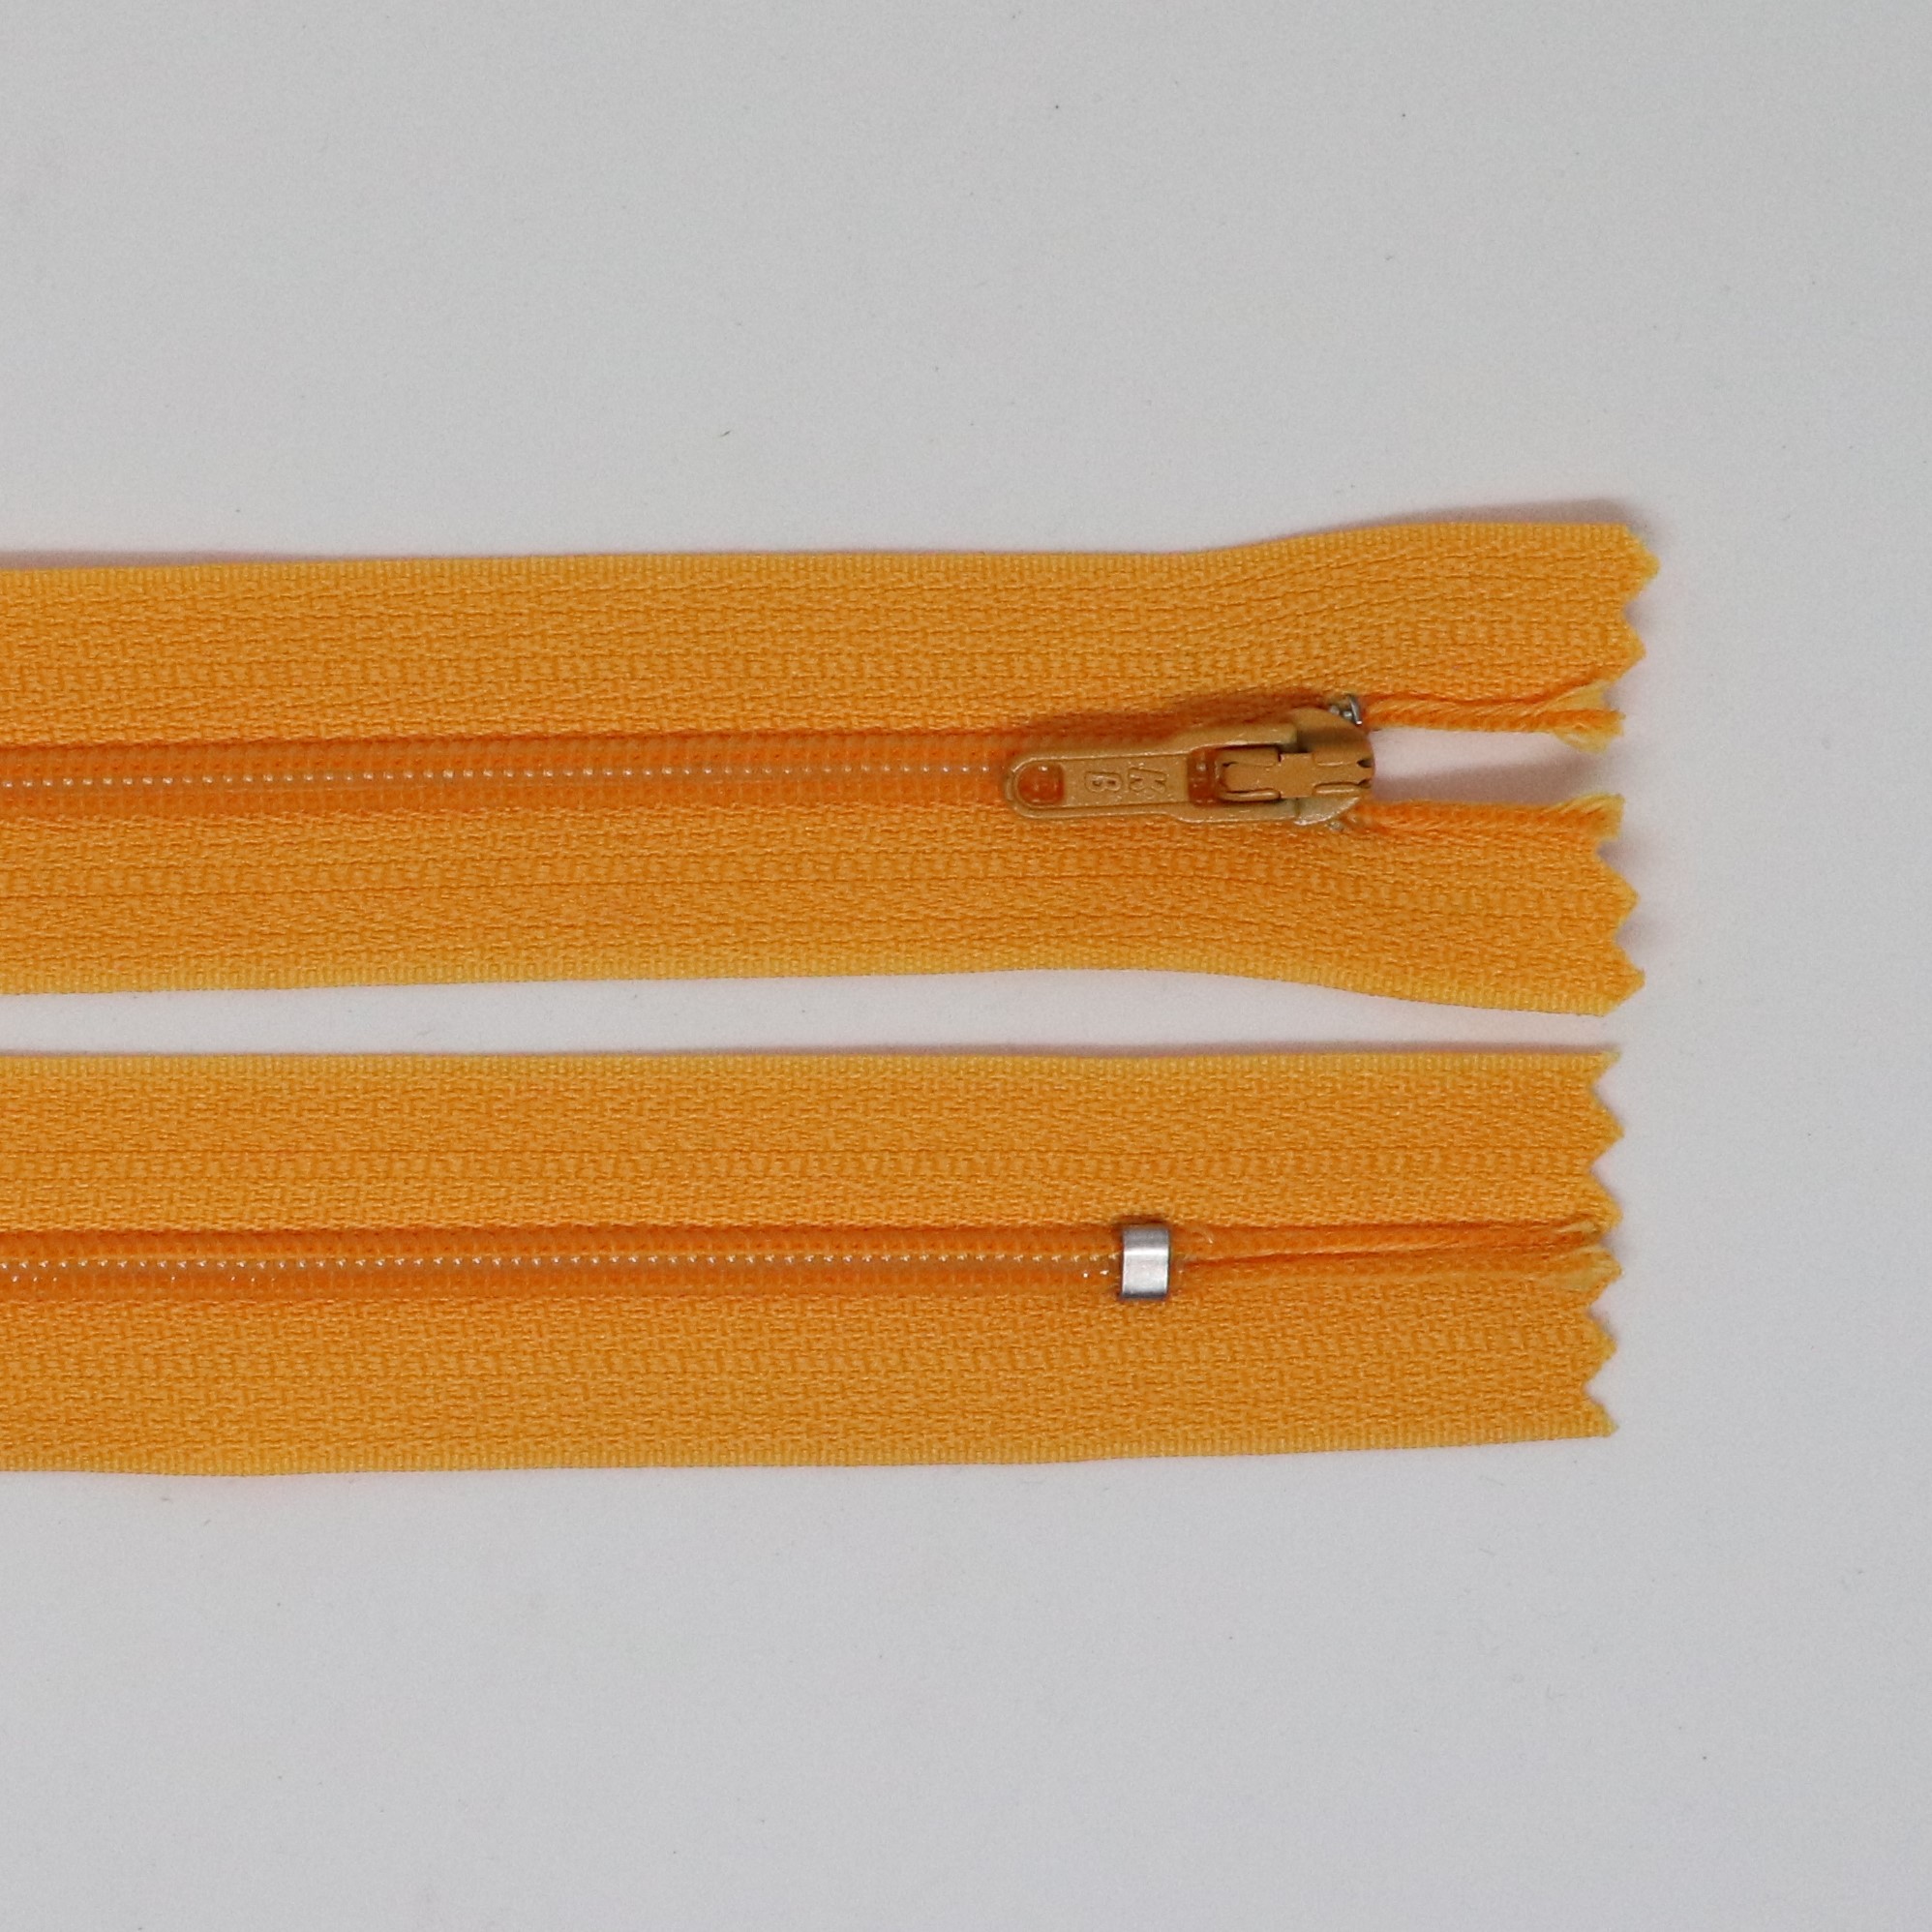 Spirálový zip, šíøe 3 mm, délka 50 cm, oranžová - zvìtšit obrázek